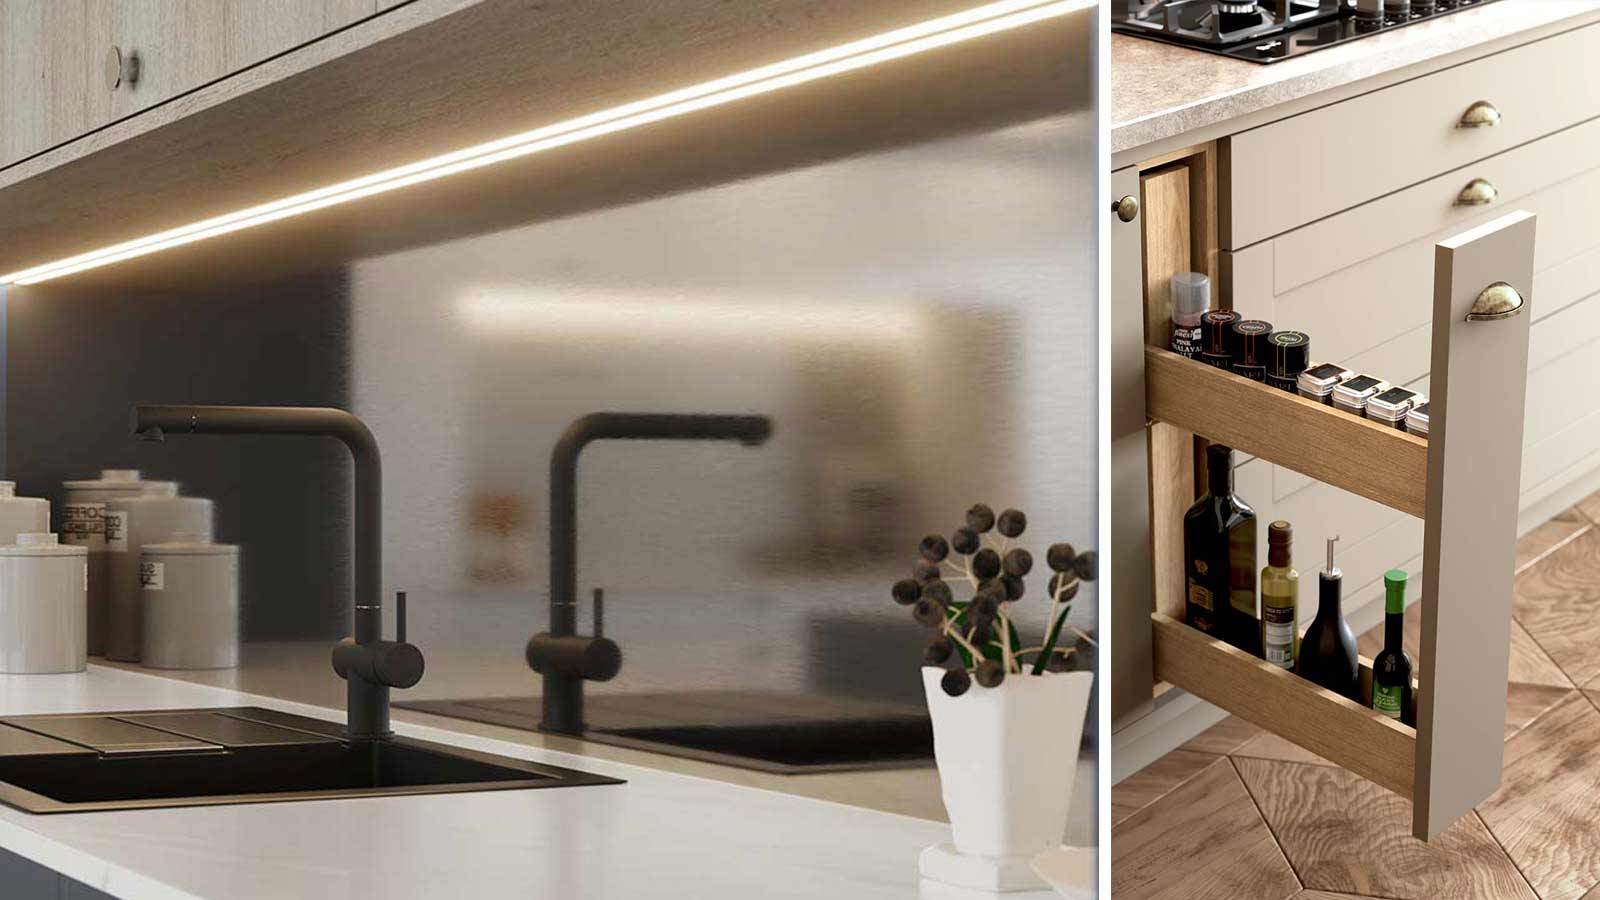 A metallic modern kitchen and slimline kitchen storage option